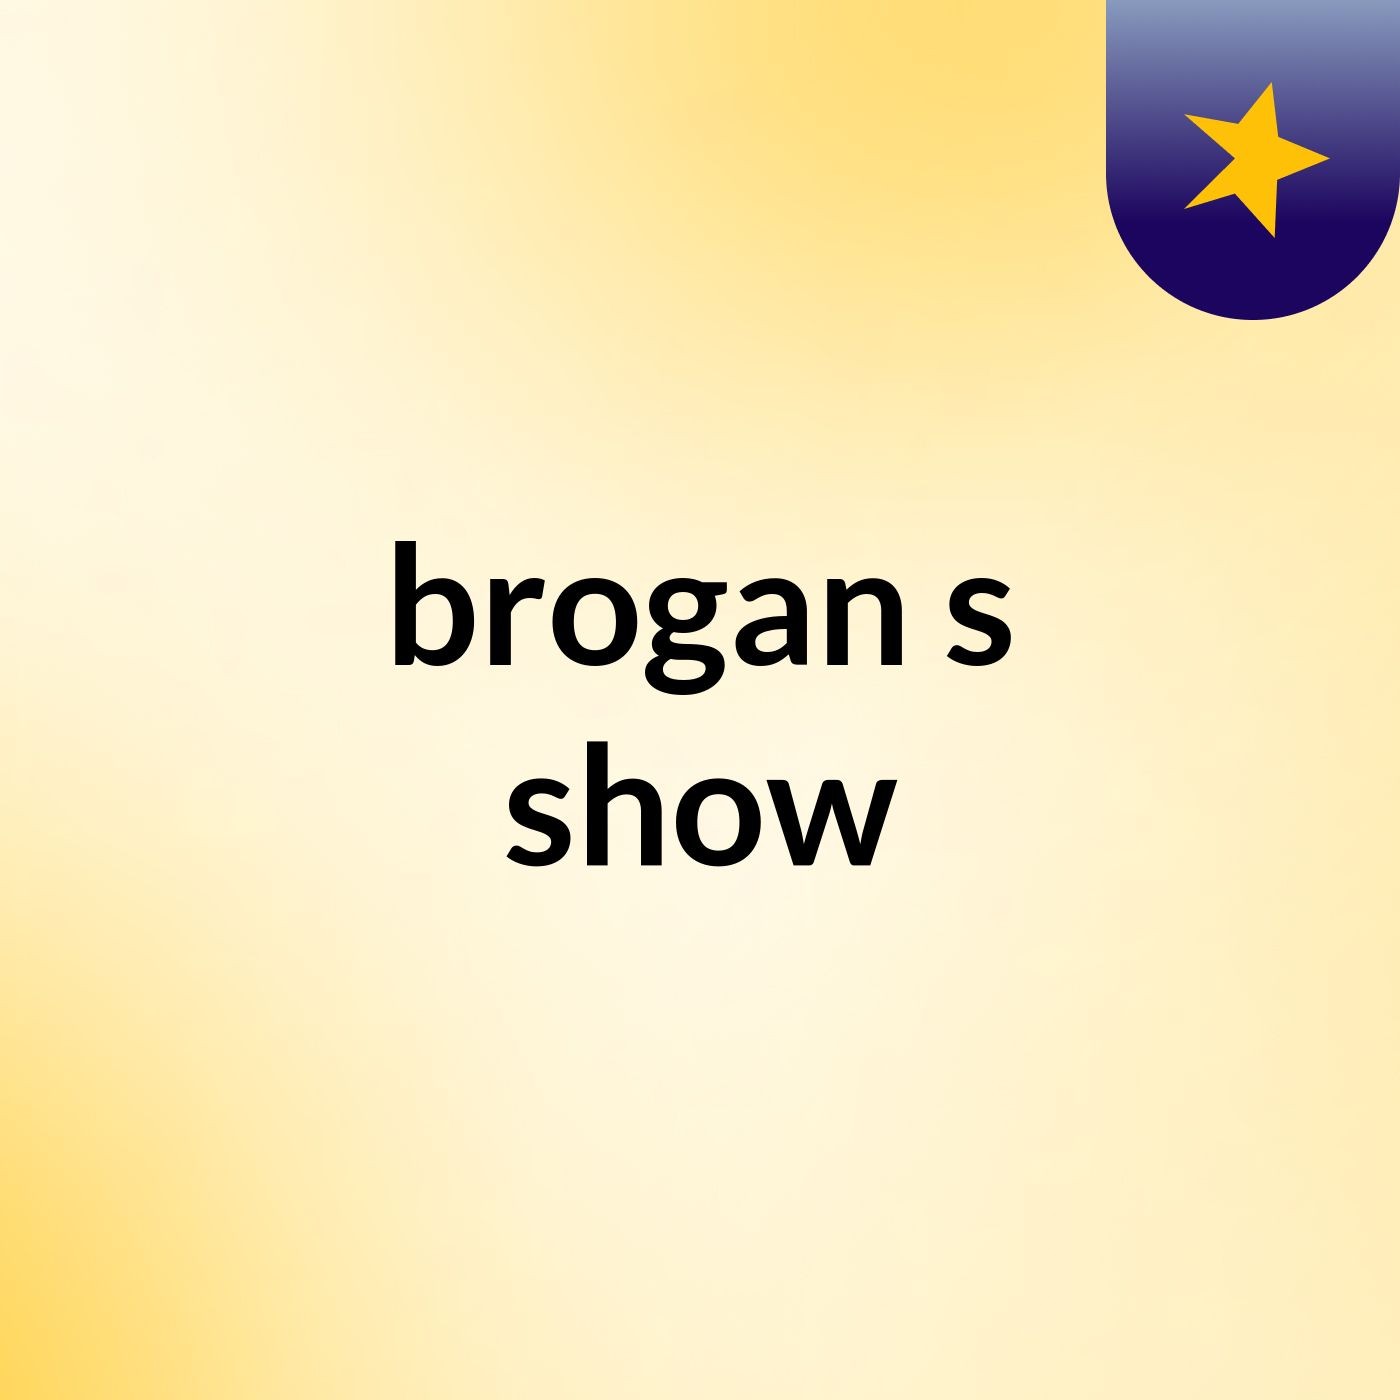 brogan's show